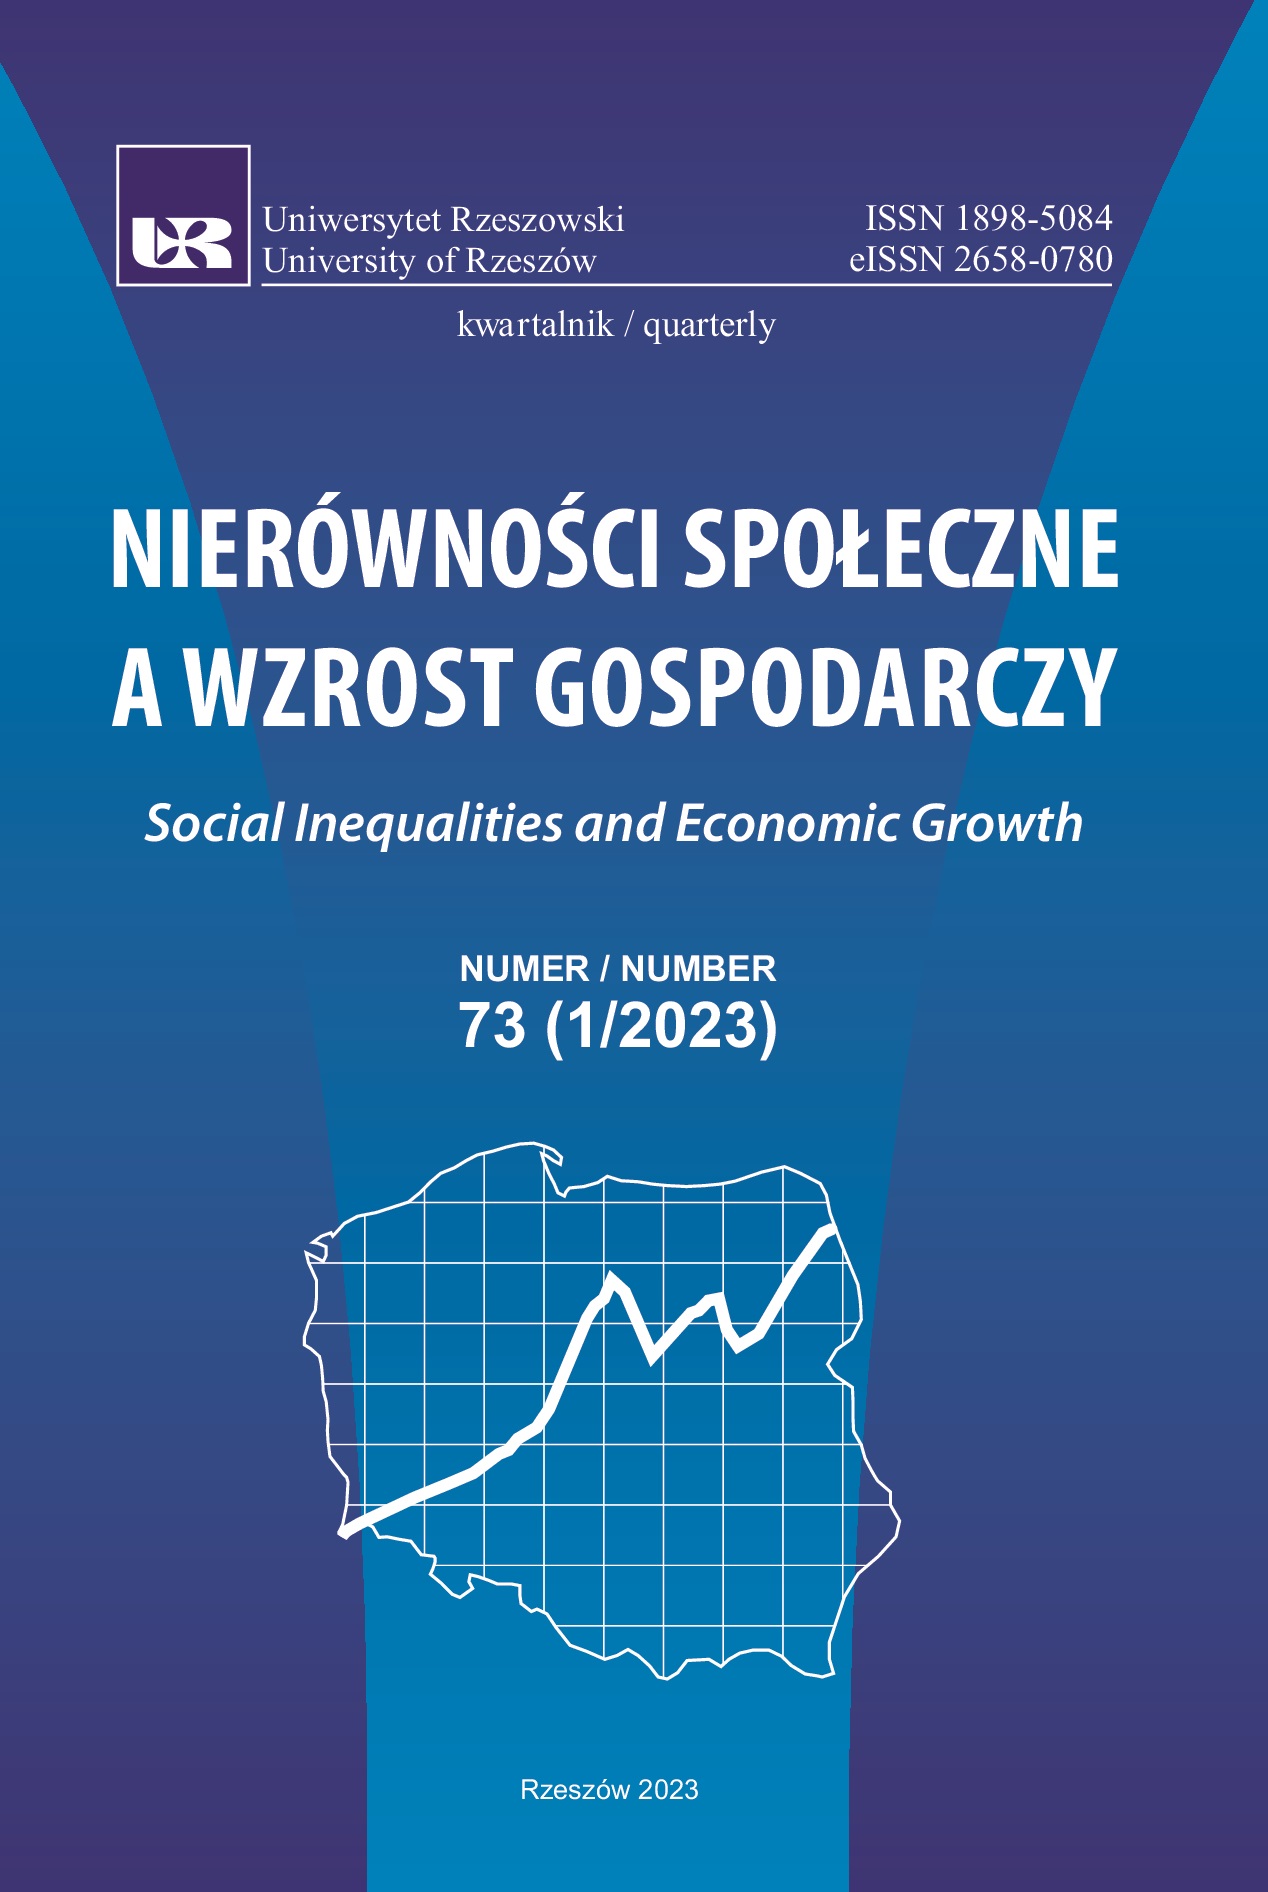 Opodatkowanie dochodów z zatrudnienia
– dylematy równościowe
w polskim systemie podatkowym